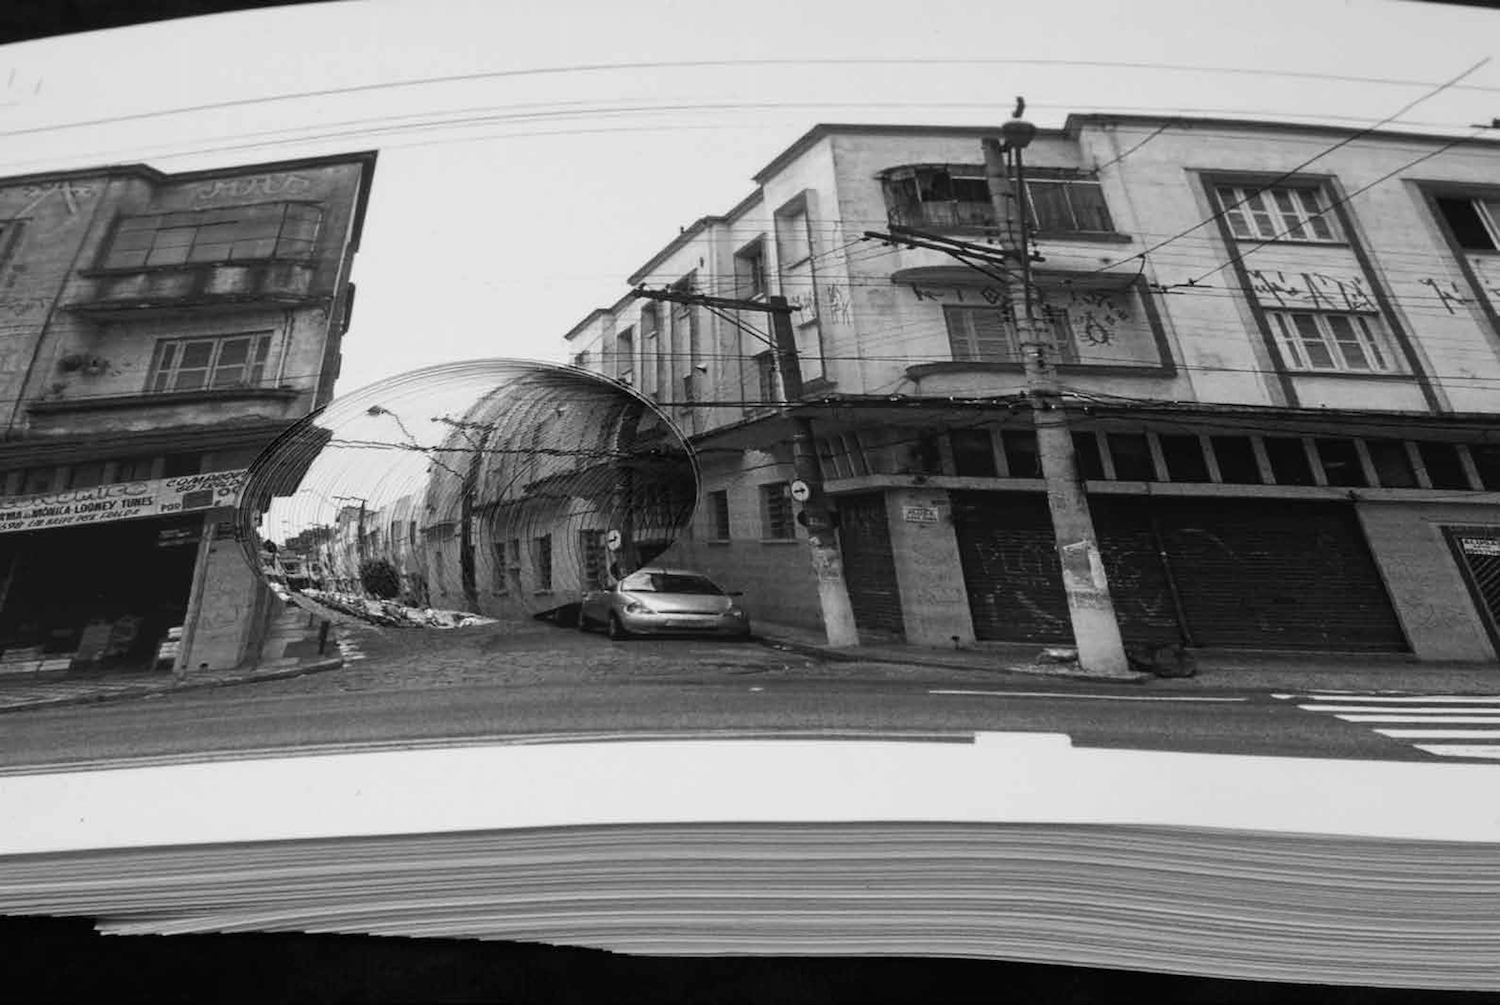 Entre duas esquinas da rua Celso Garcia, de Lucia Mindlin Loeb, 2007. Livro de artista, 45 x 23 x 2,5 cm. Coleção de Fotografia Contemporânea / Acervo IMS